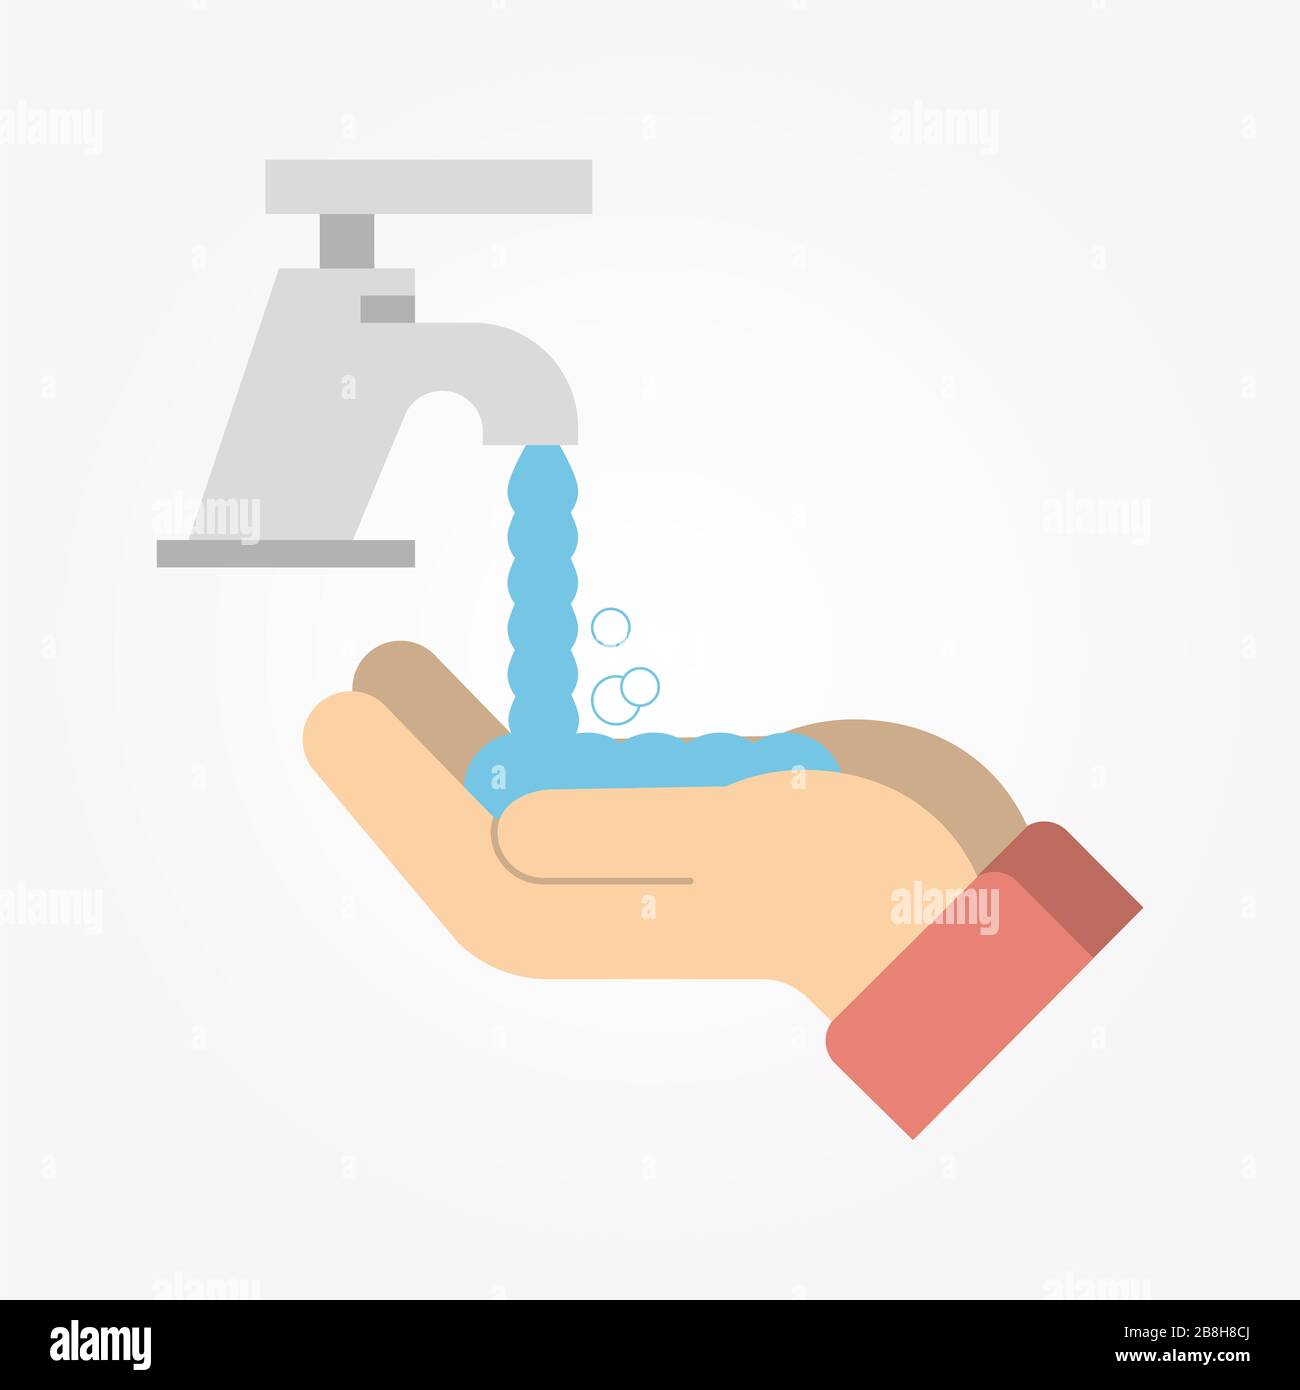 Waschen/desinfizieren/desinfizieren Sie Ihre Hände regelmäßig und gründlich, um eine gute Hygiene und Gesundheit zu gewährleisten und eine Infektion mit einem Virus zu vermeiden. Stockfoto